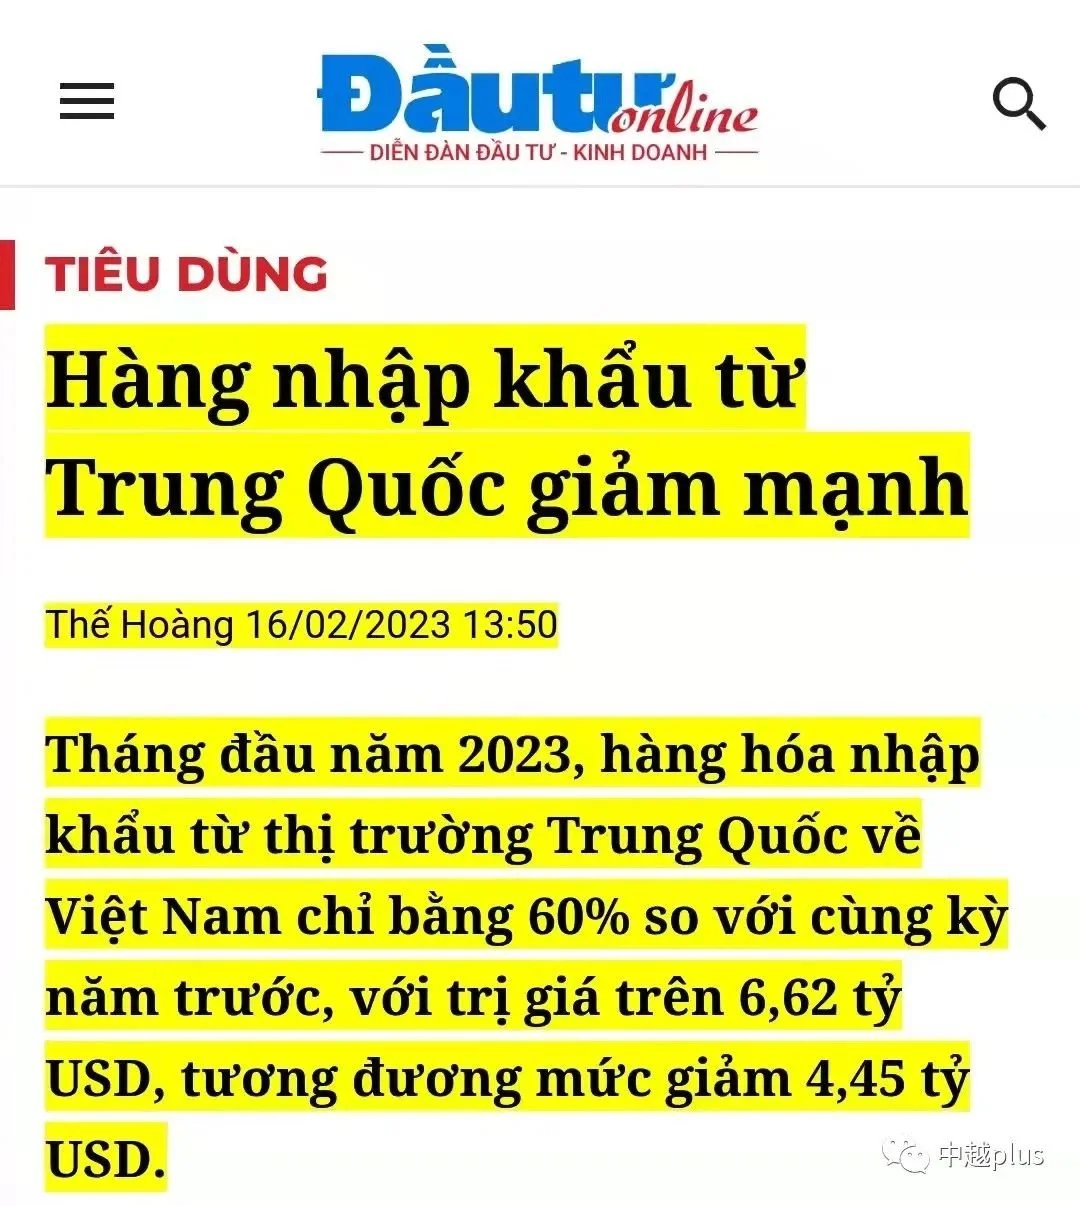 越南媒体报道